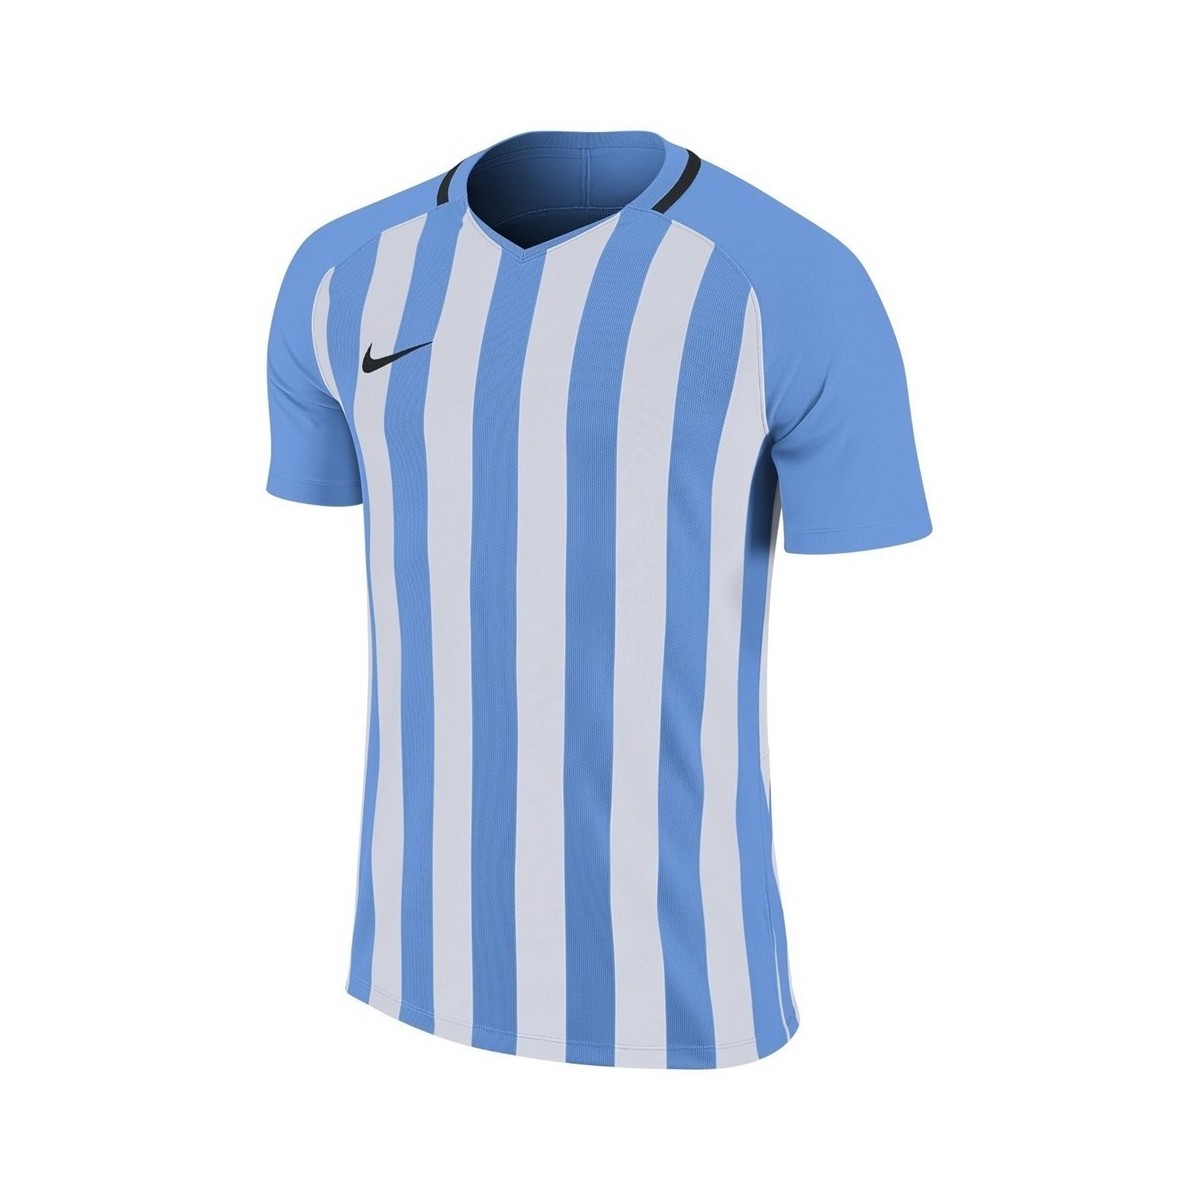 Oblačila Moški Majice s kratkimi rokavi Nike Striped Division Jersey Iii Bela, Svetlo modra